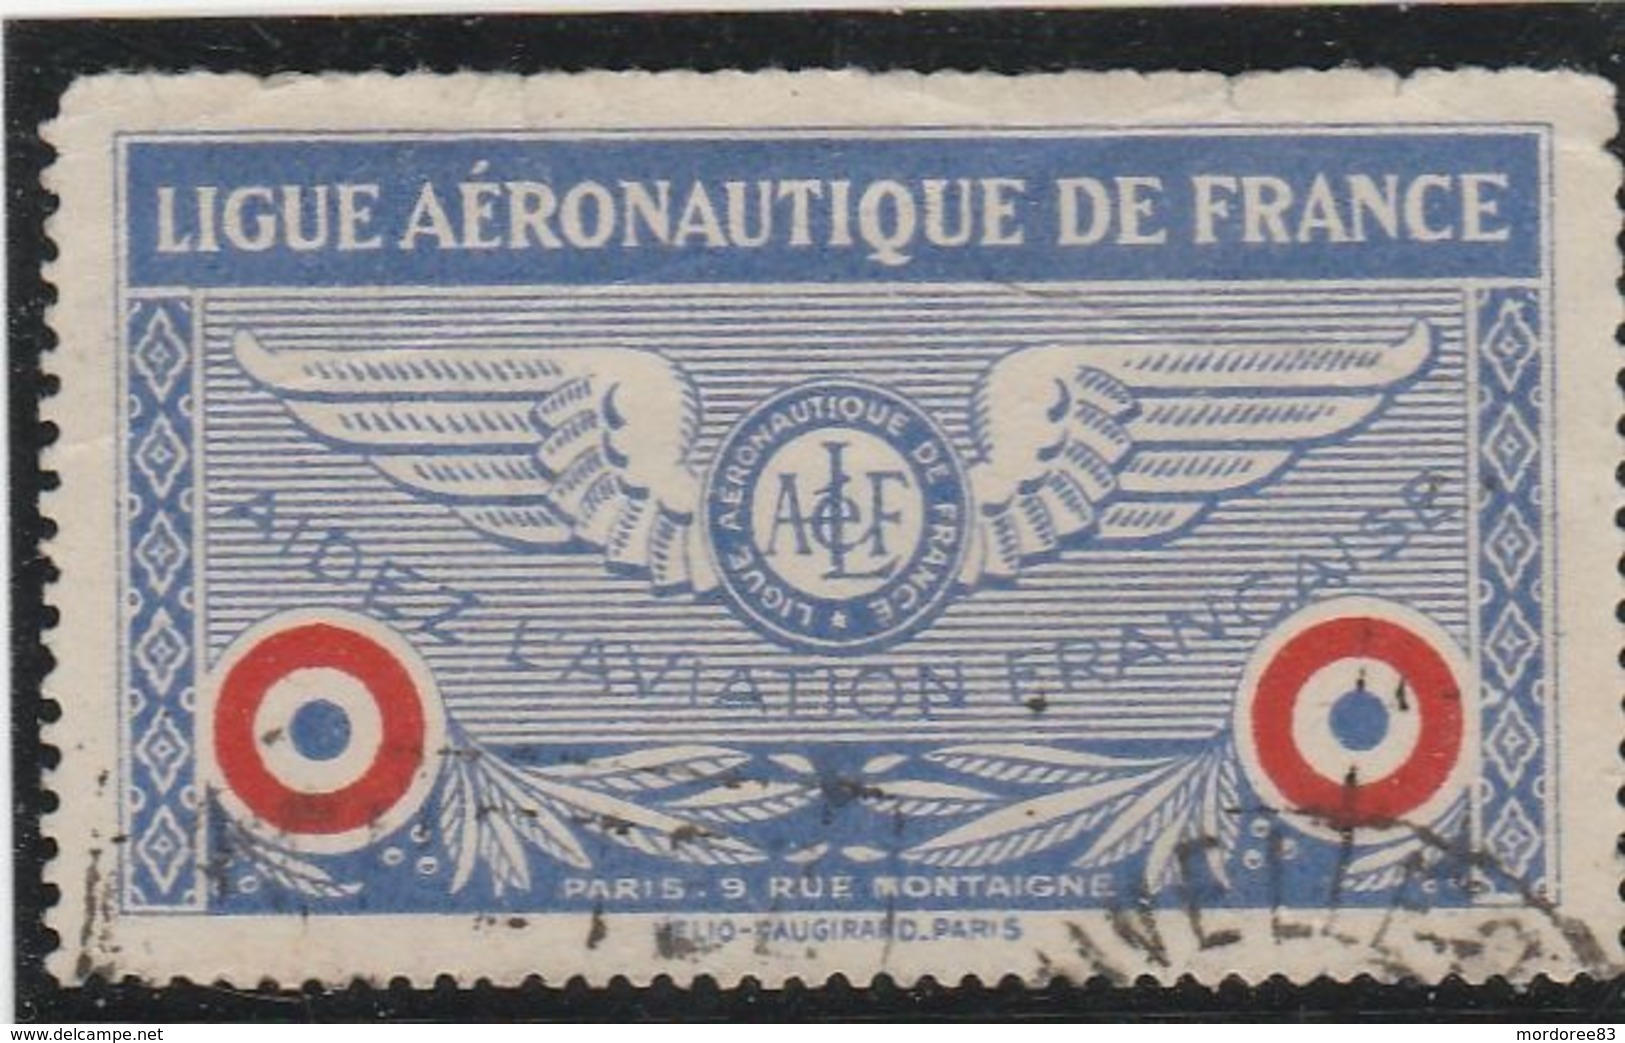 VIGNETTE OBLITERE LIGUE AERONAUTIQUE DE FRANCE (note) - Luftfahrt